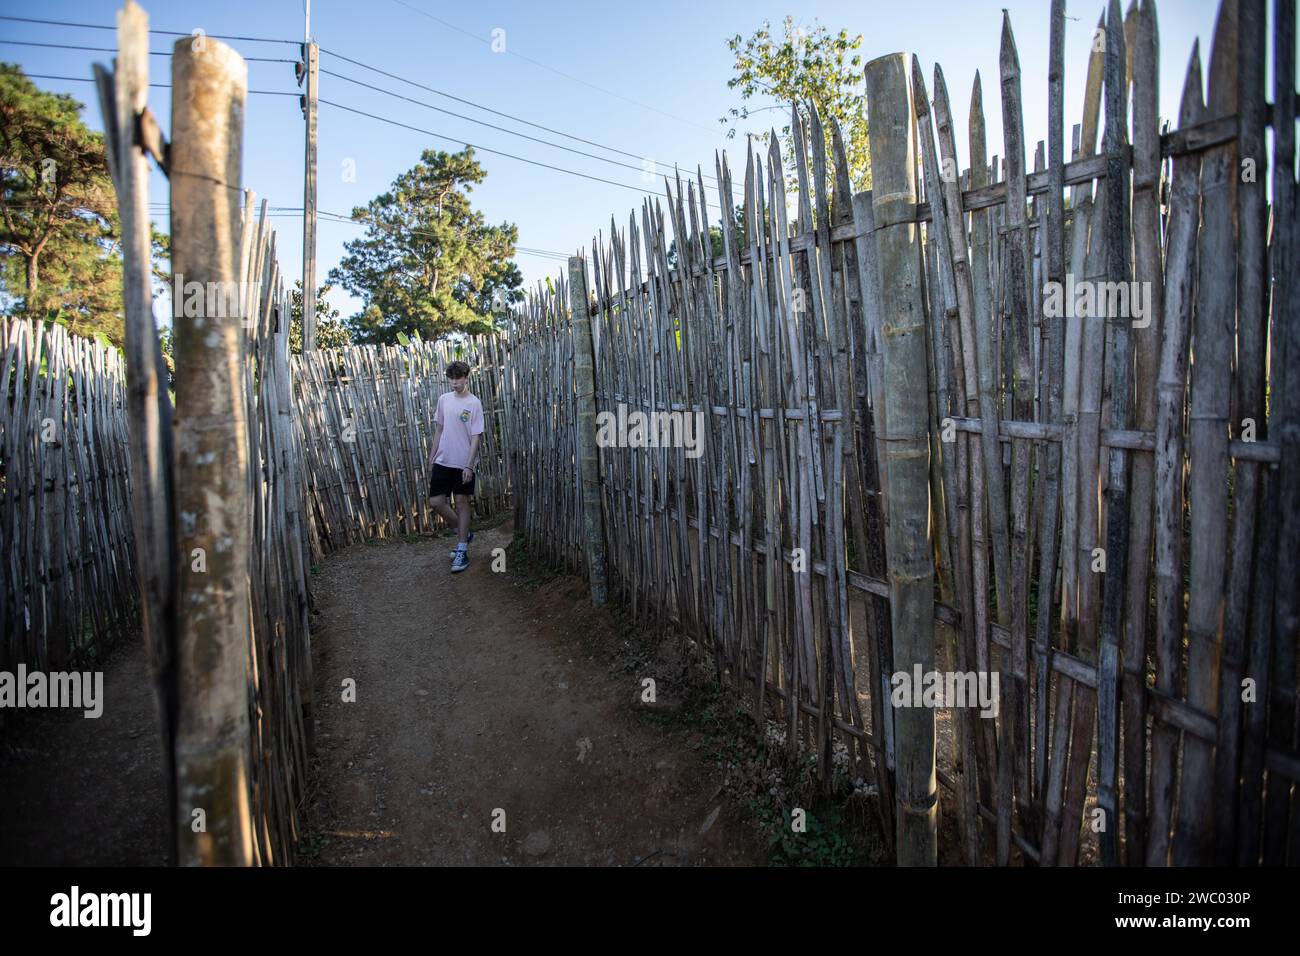 Un turista occidentale cammina attraverso lo stretto sentiero circondato da alte recinzioni di bambù per entrare nell'avamposto militare di Chang Moob. L'avamposto militare di Chang Moob ora trasformato in un luogo di attrazione turistica, era un luogo dell'esercito reale tailandese per prevenire il traffico di droga e tenere d'occhio altre attività sospette sul lato del Myanmar (soprattutto negli anni '1990). Chiamata anche "trincee di Doi Tung", inizia con uno stretto sentiero attraverso alte recinzioni di bambù prima di raggiungere il punto principale con profonde trincee lungo le sezioni più settentrionali del confine tra Thailandia e Myanmar, con una vista mozzafiato del monte Myanmar Foto Stock